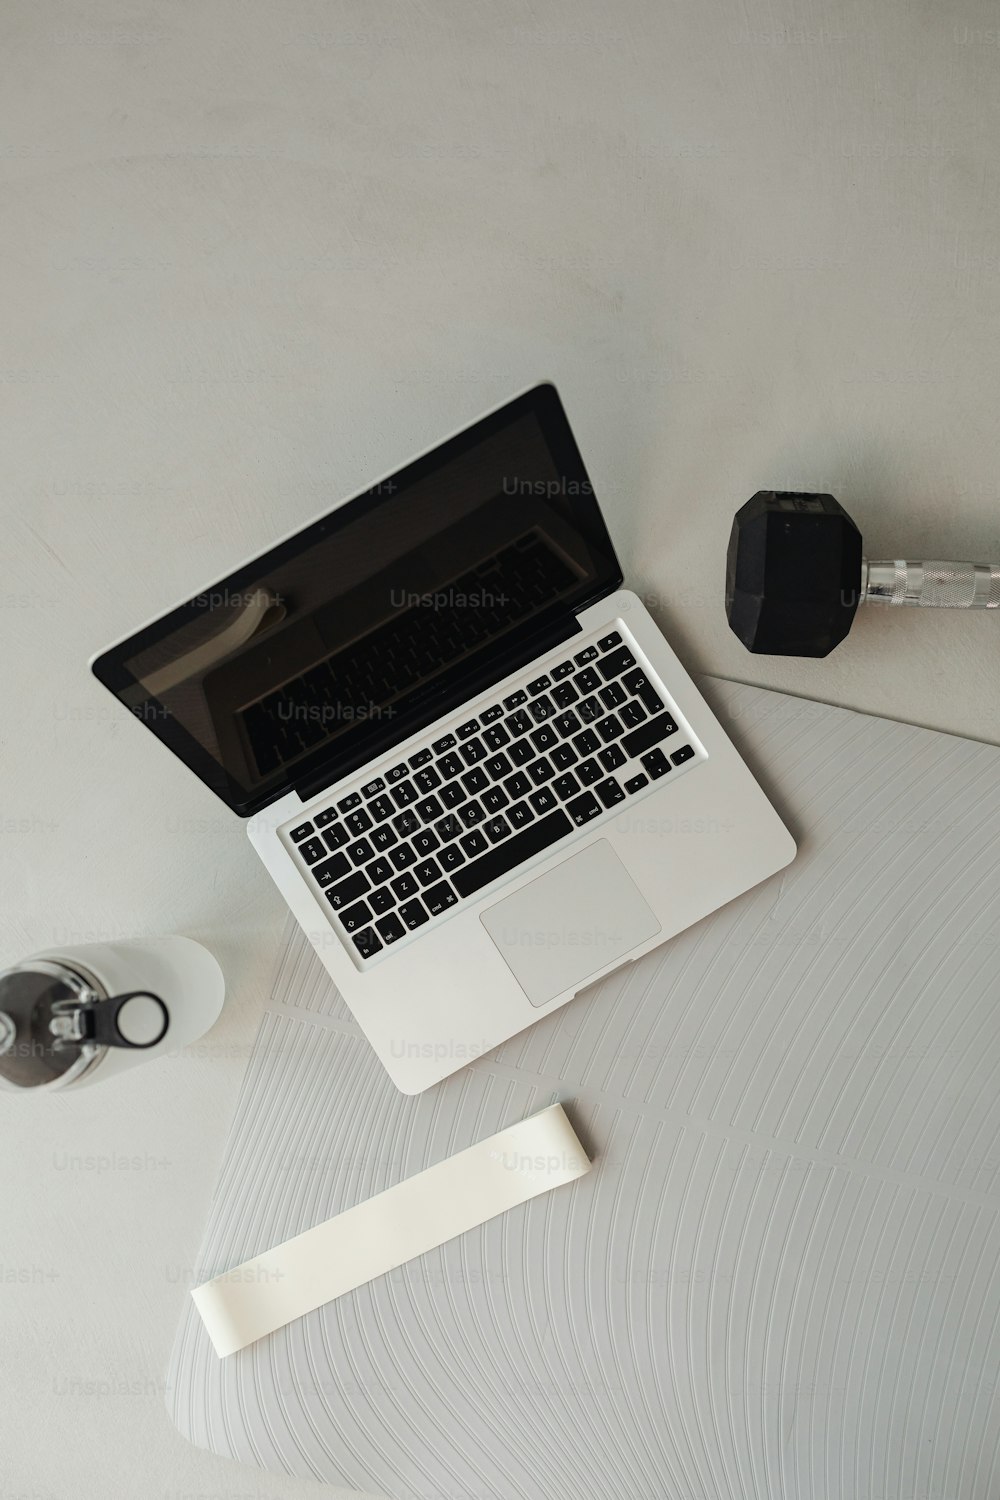 Ein Laptop sitzt auf einem weißen Schreibtisch